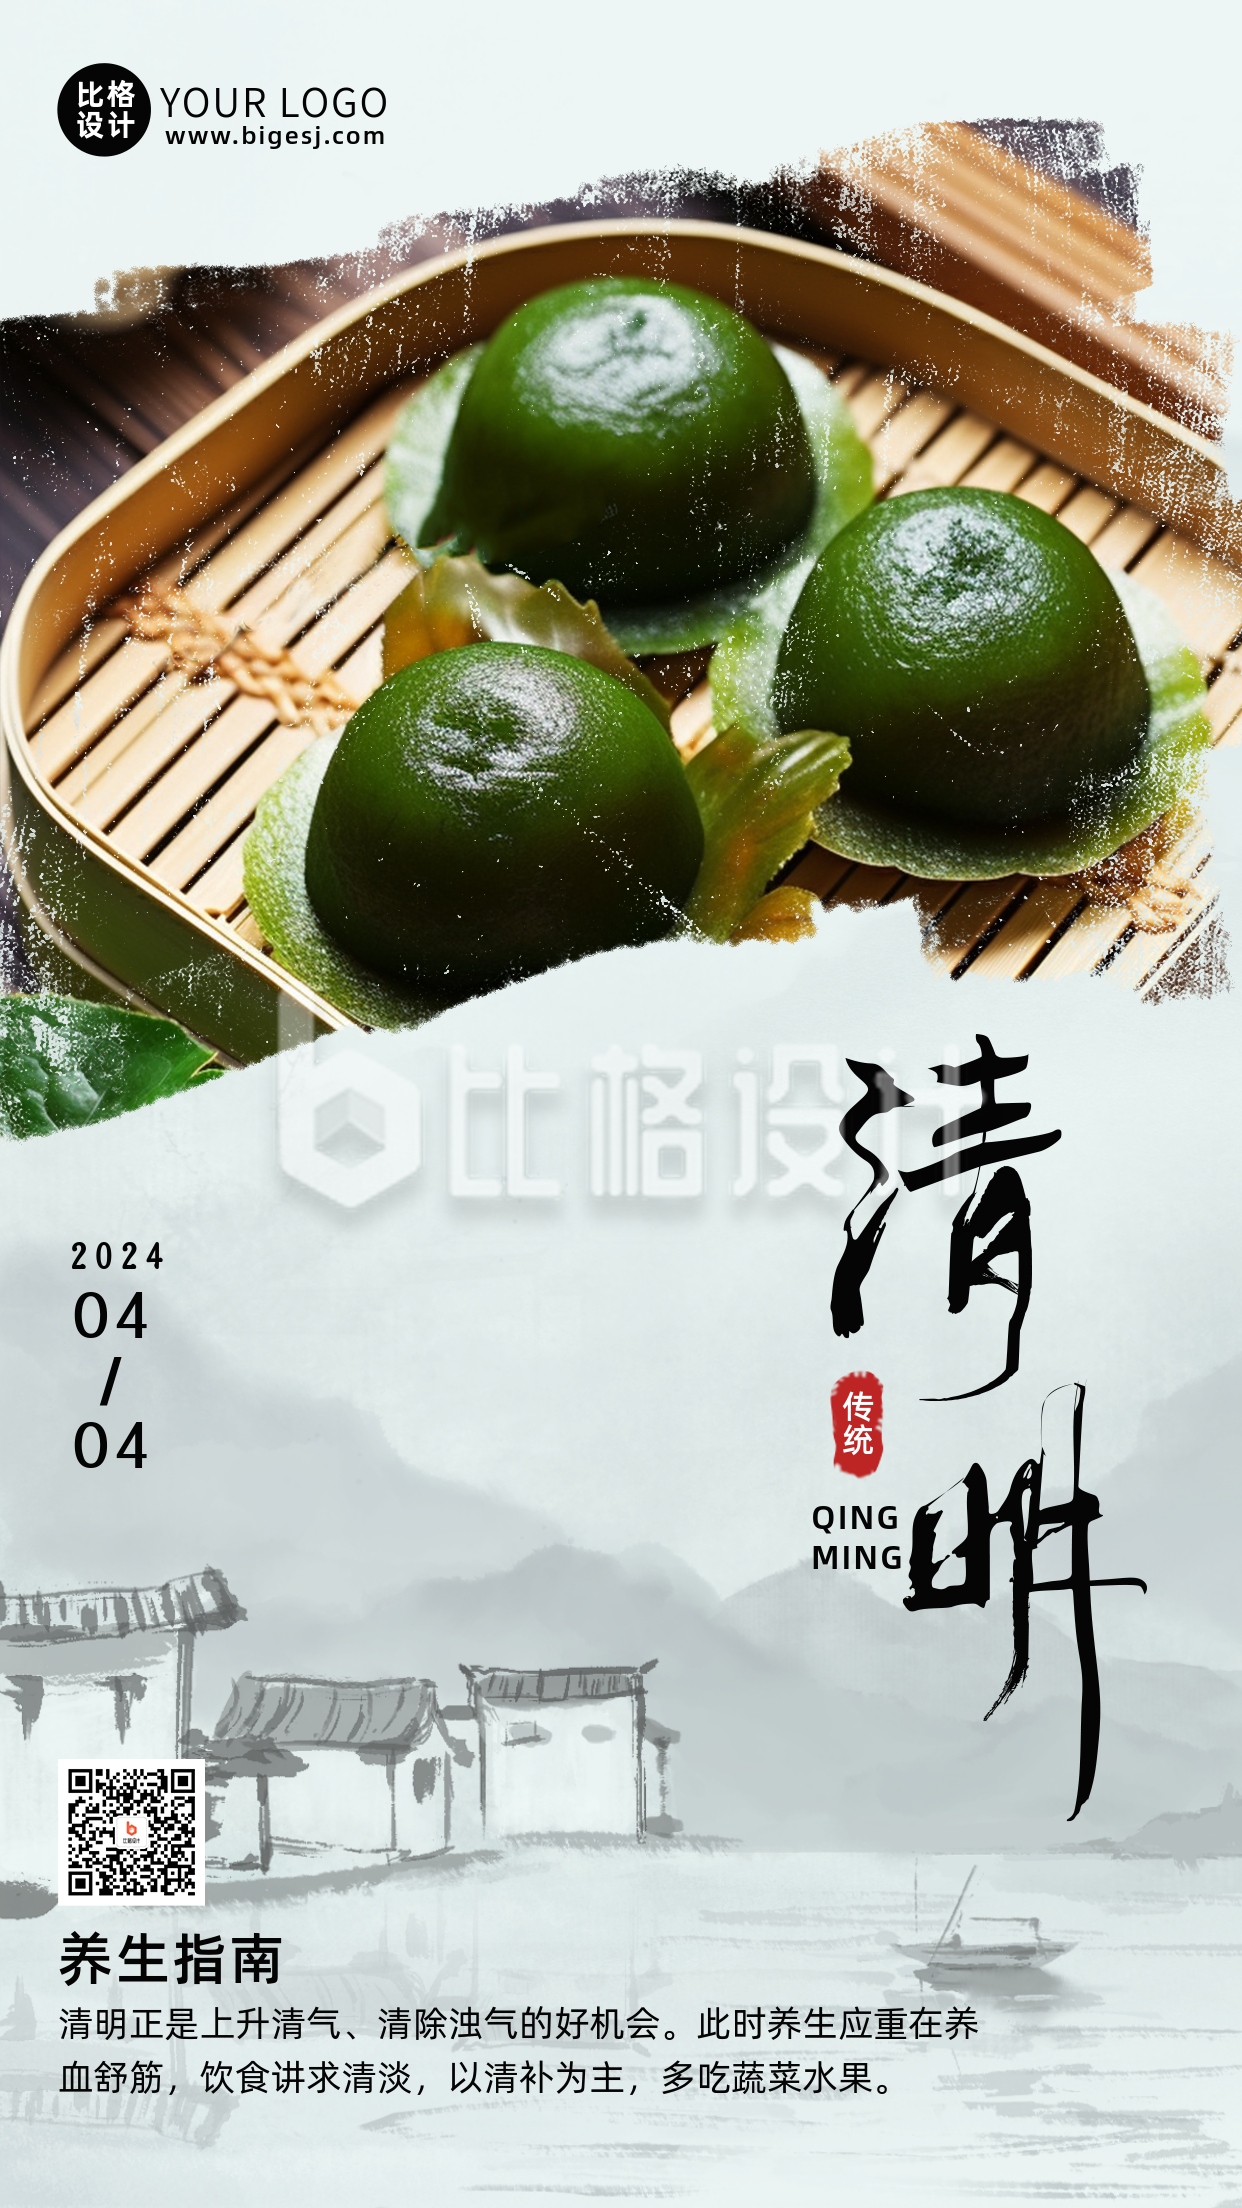 清明节传统习俗吃青团养生实景手机海报